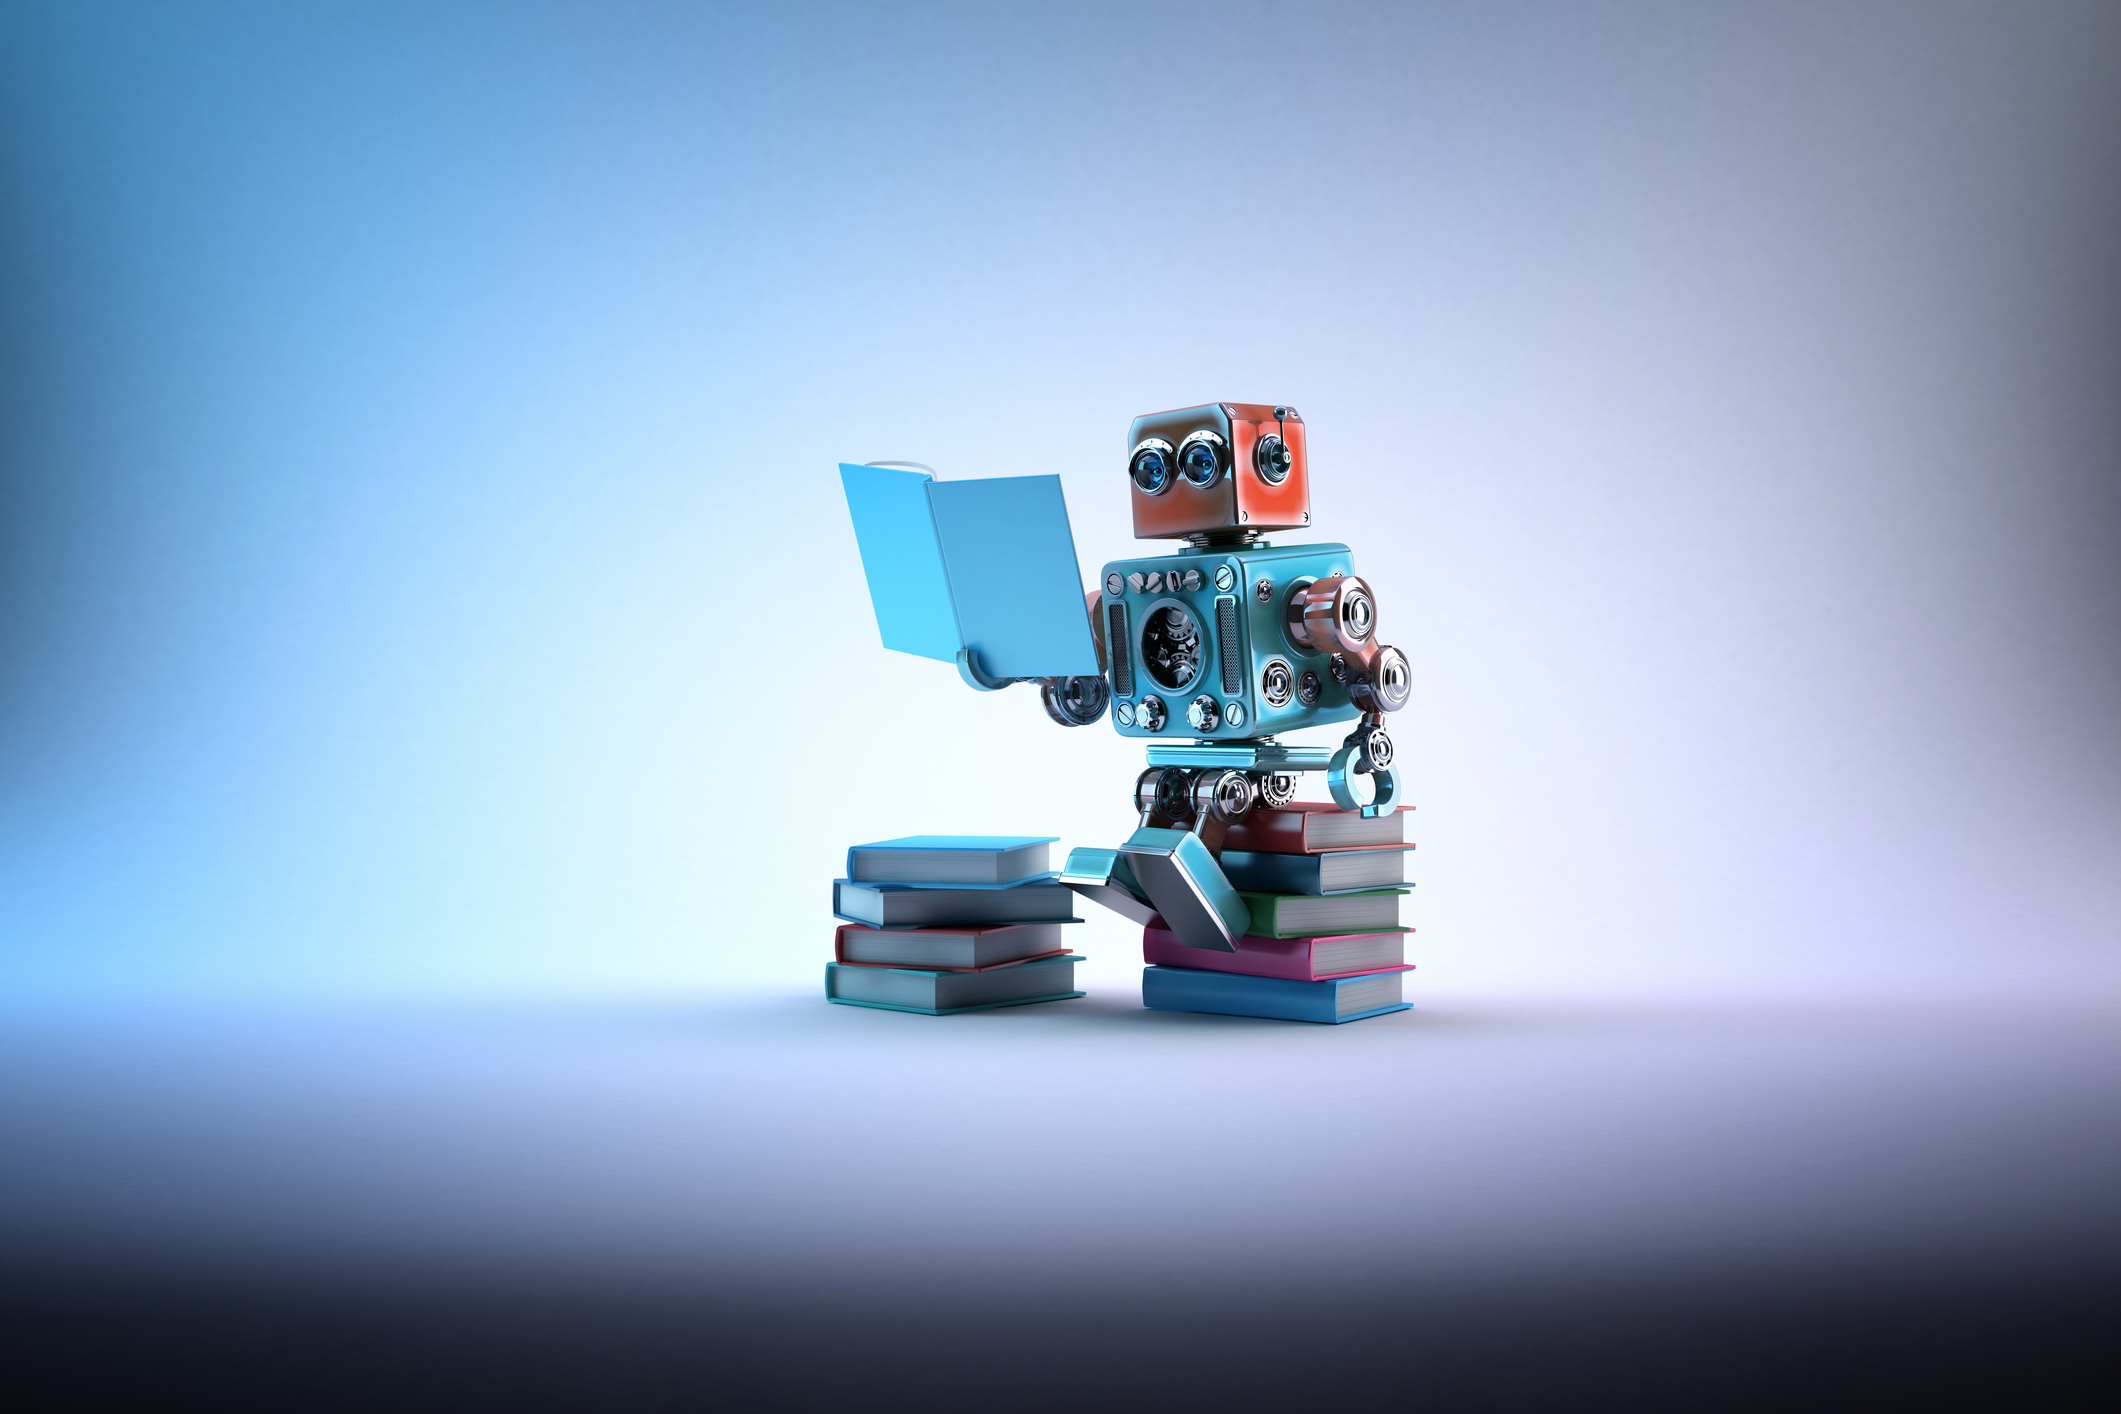 Bir sürü kitabın üzerinde oturan robot